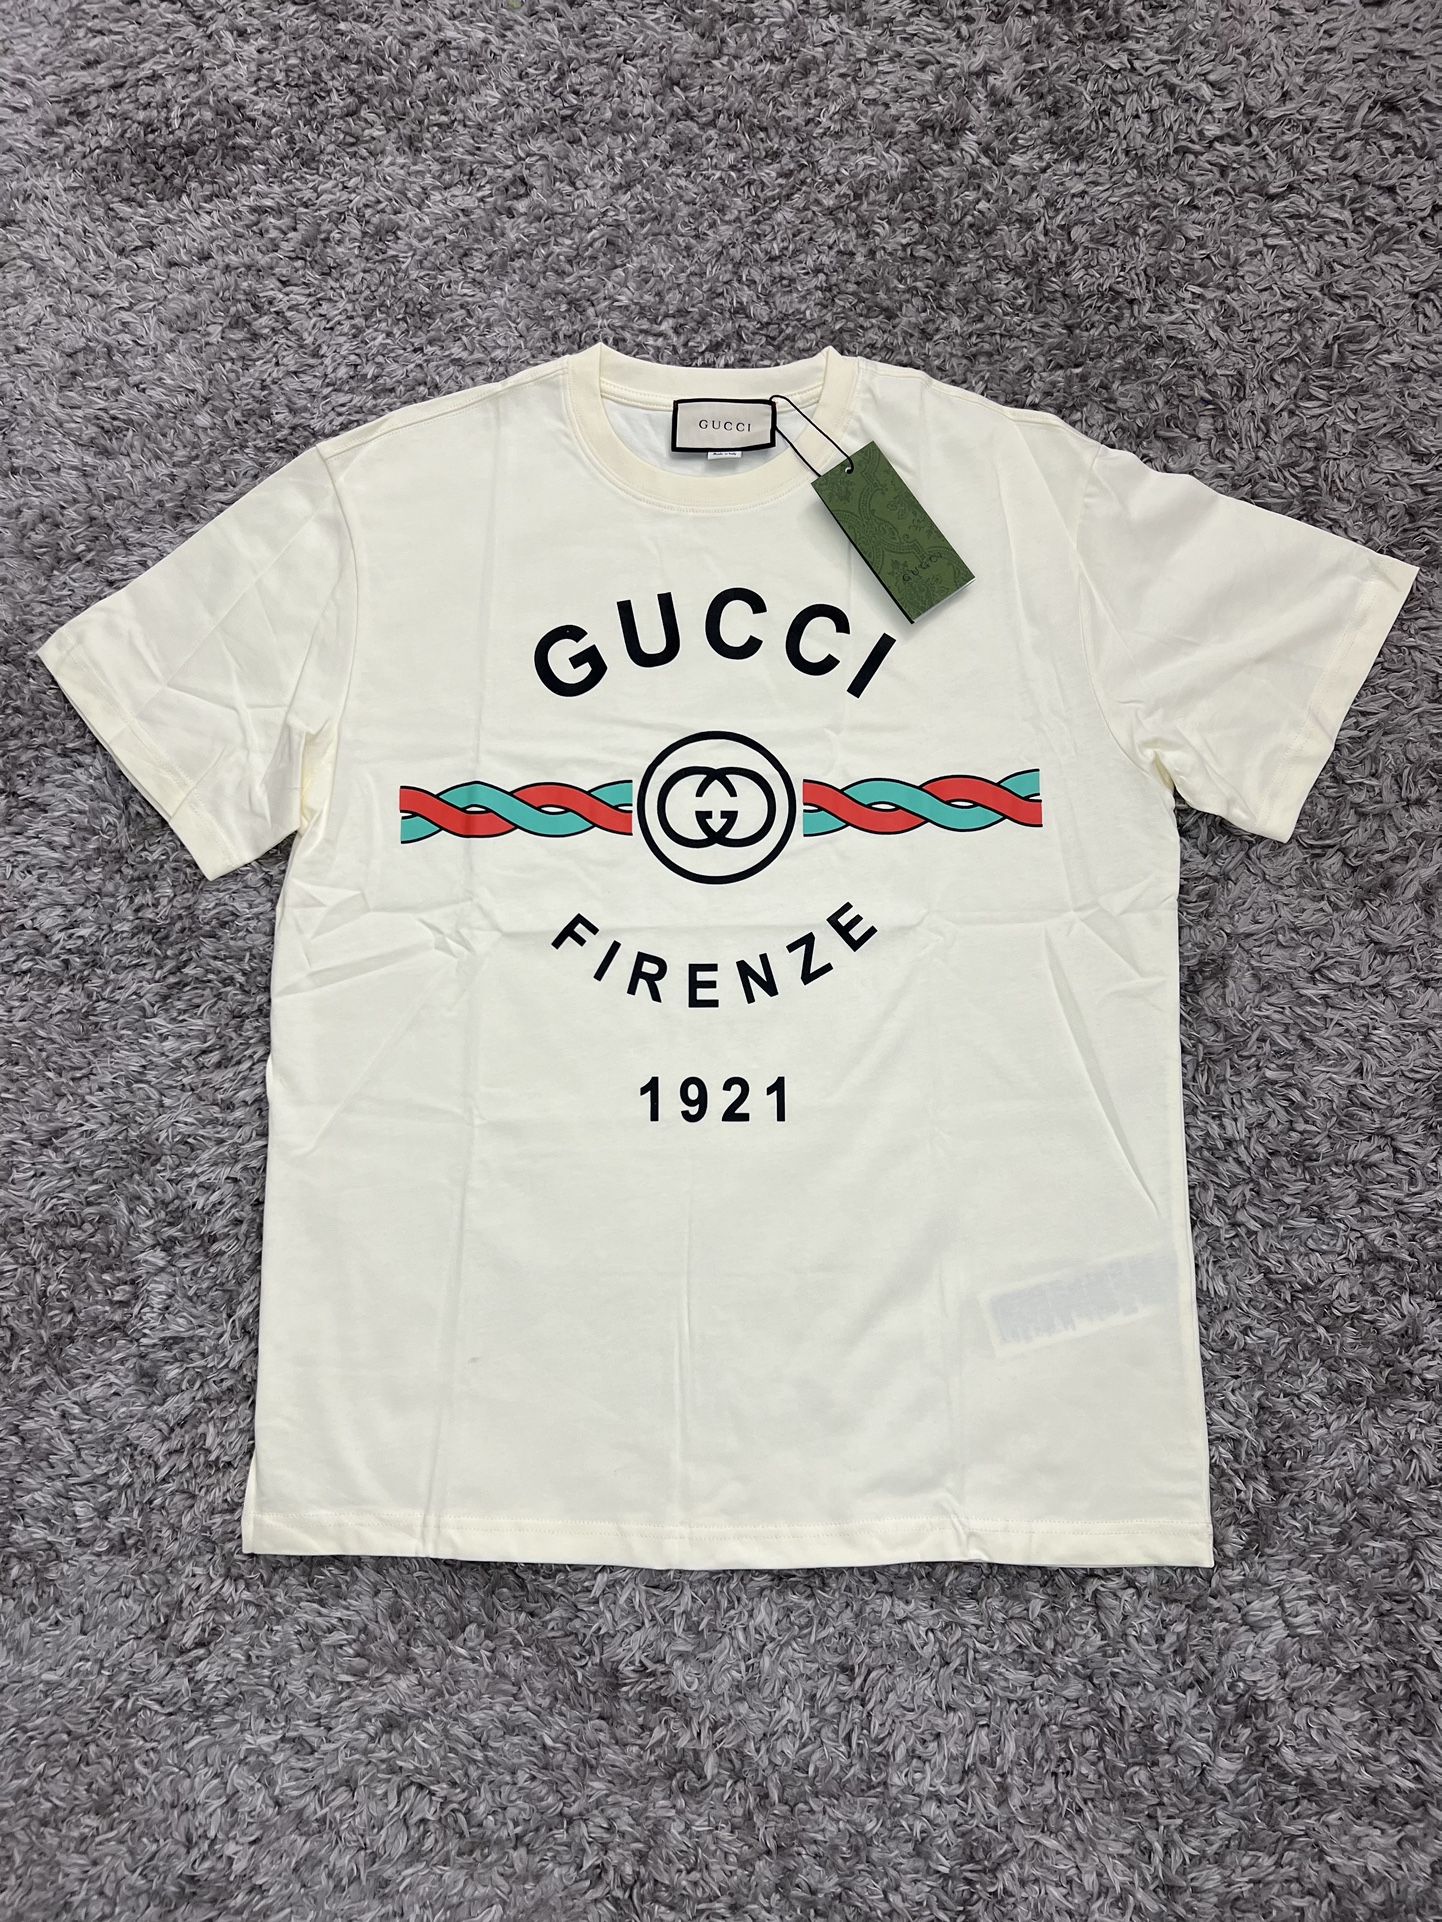 Gucci t shirt size L